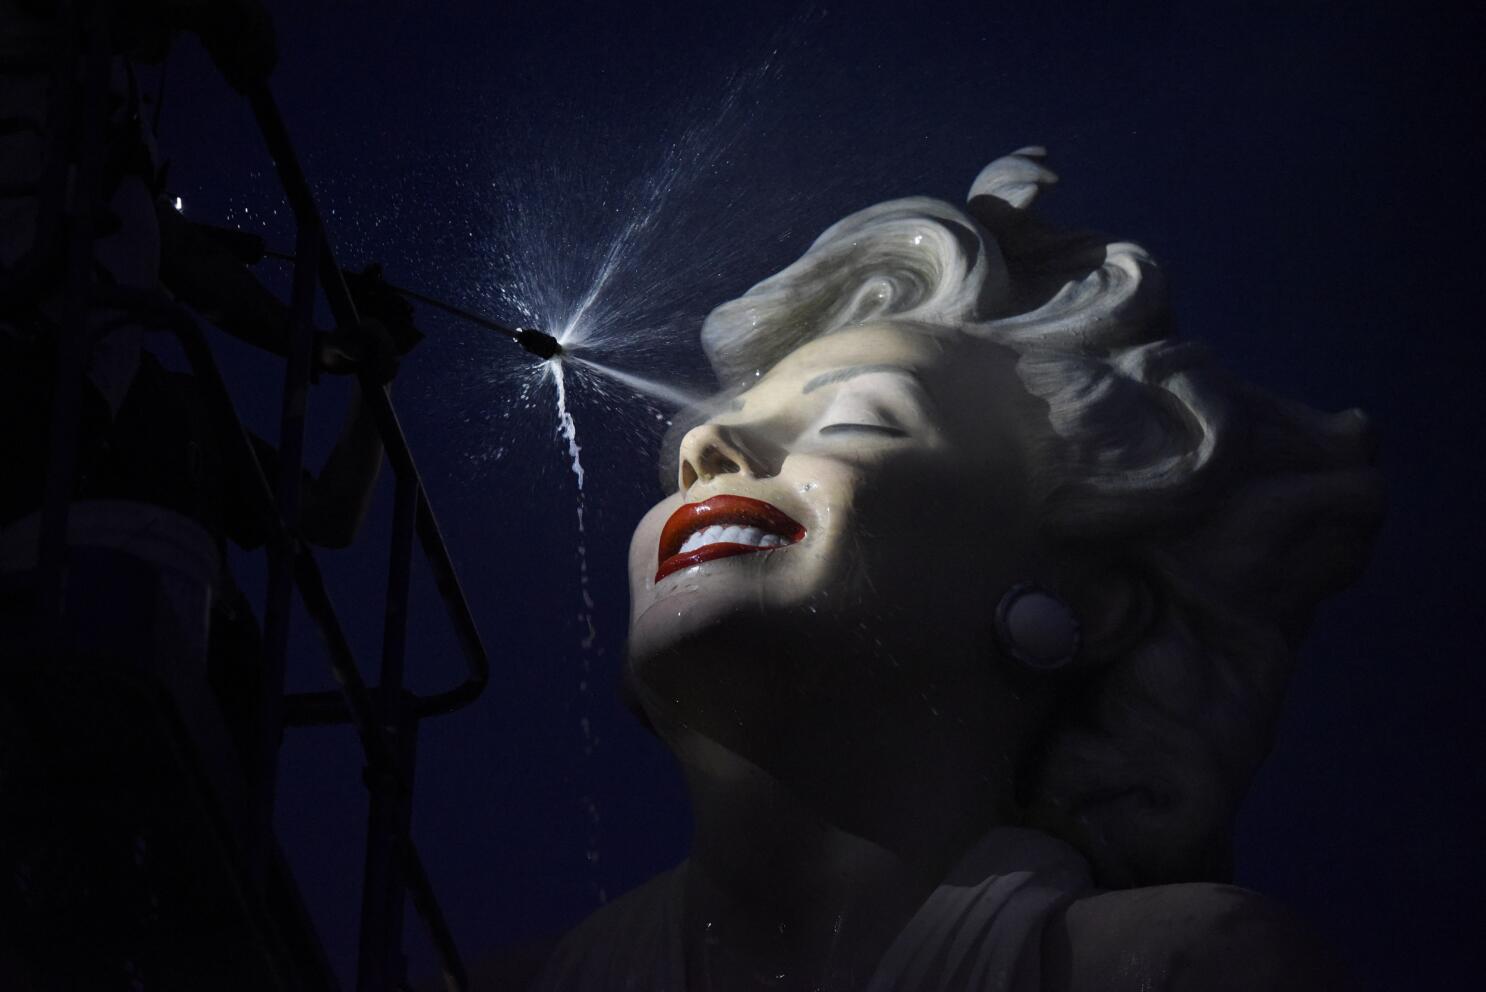 Marilyn Monroe's tragic death reaches 59 year anniversary